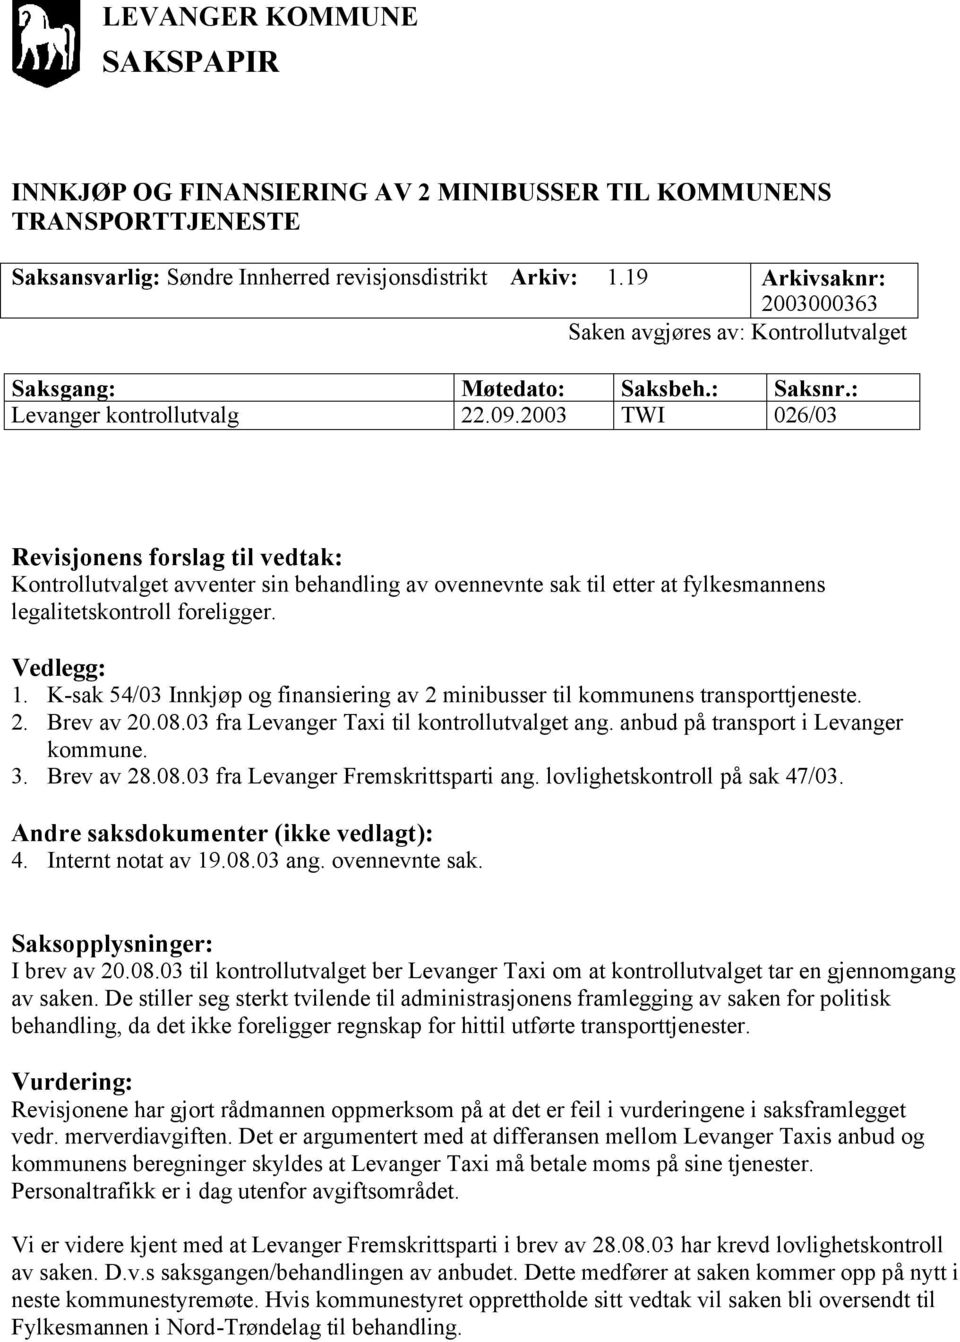 K-sak 54/03 Innkjøp og finansiering av 2 minibusser til kommunens transporttjeneste. 2. Brev av 20.08.03 fra Levanger Taxi til kontrollutvalget ang. anbud på transport i Levanger kommune. 3.